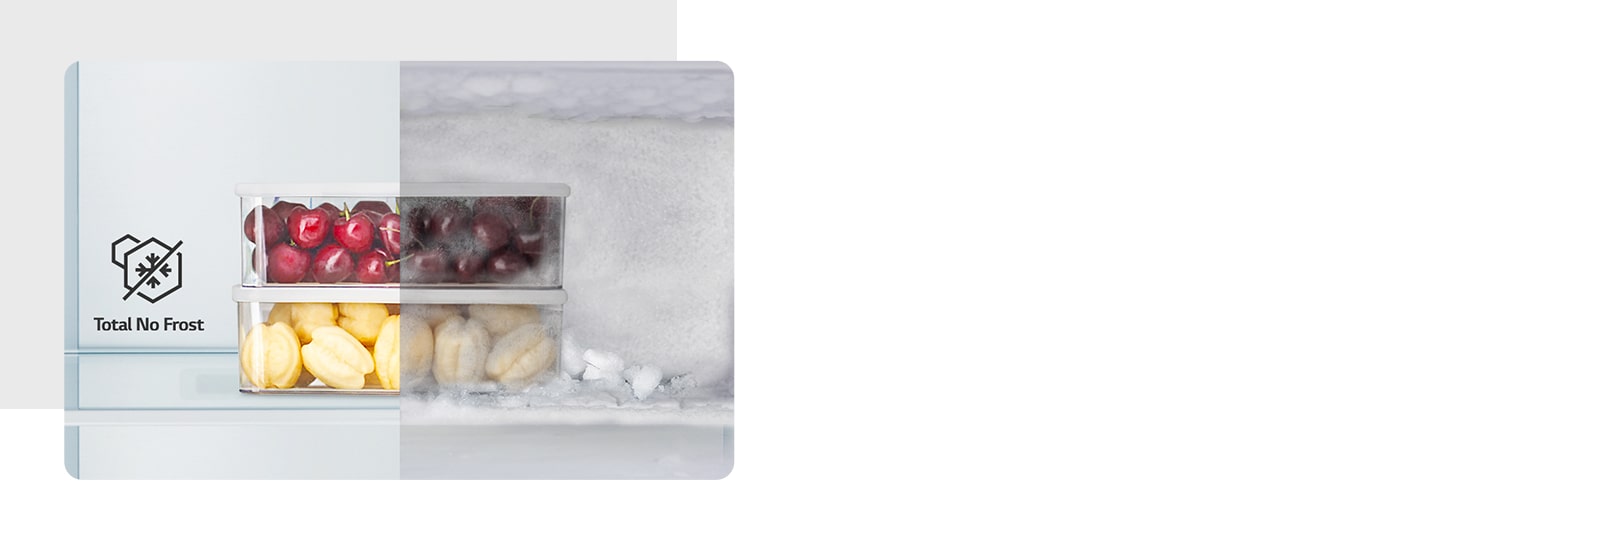 Hiển thị thực phẩm trong tủ lạnh vẫn tươi ngon và không bị đóng băng